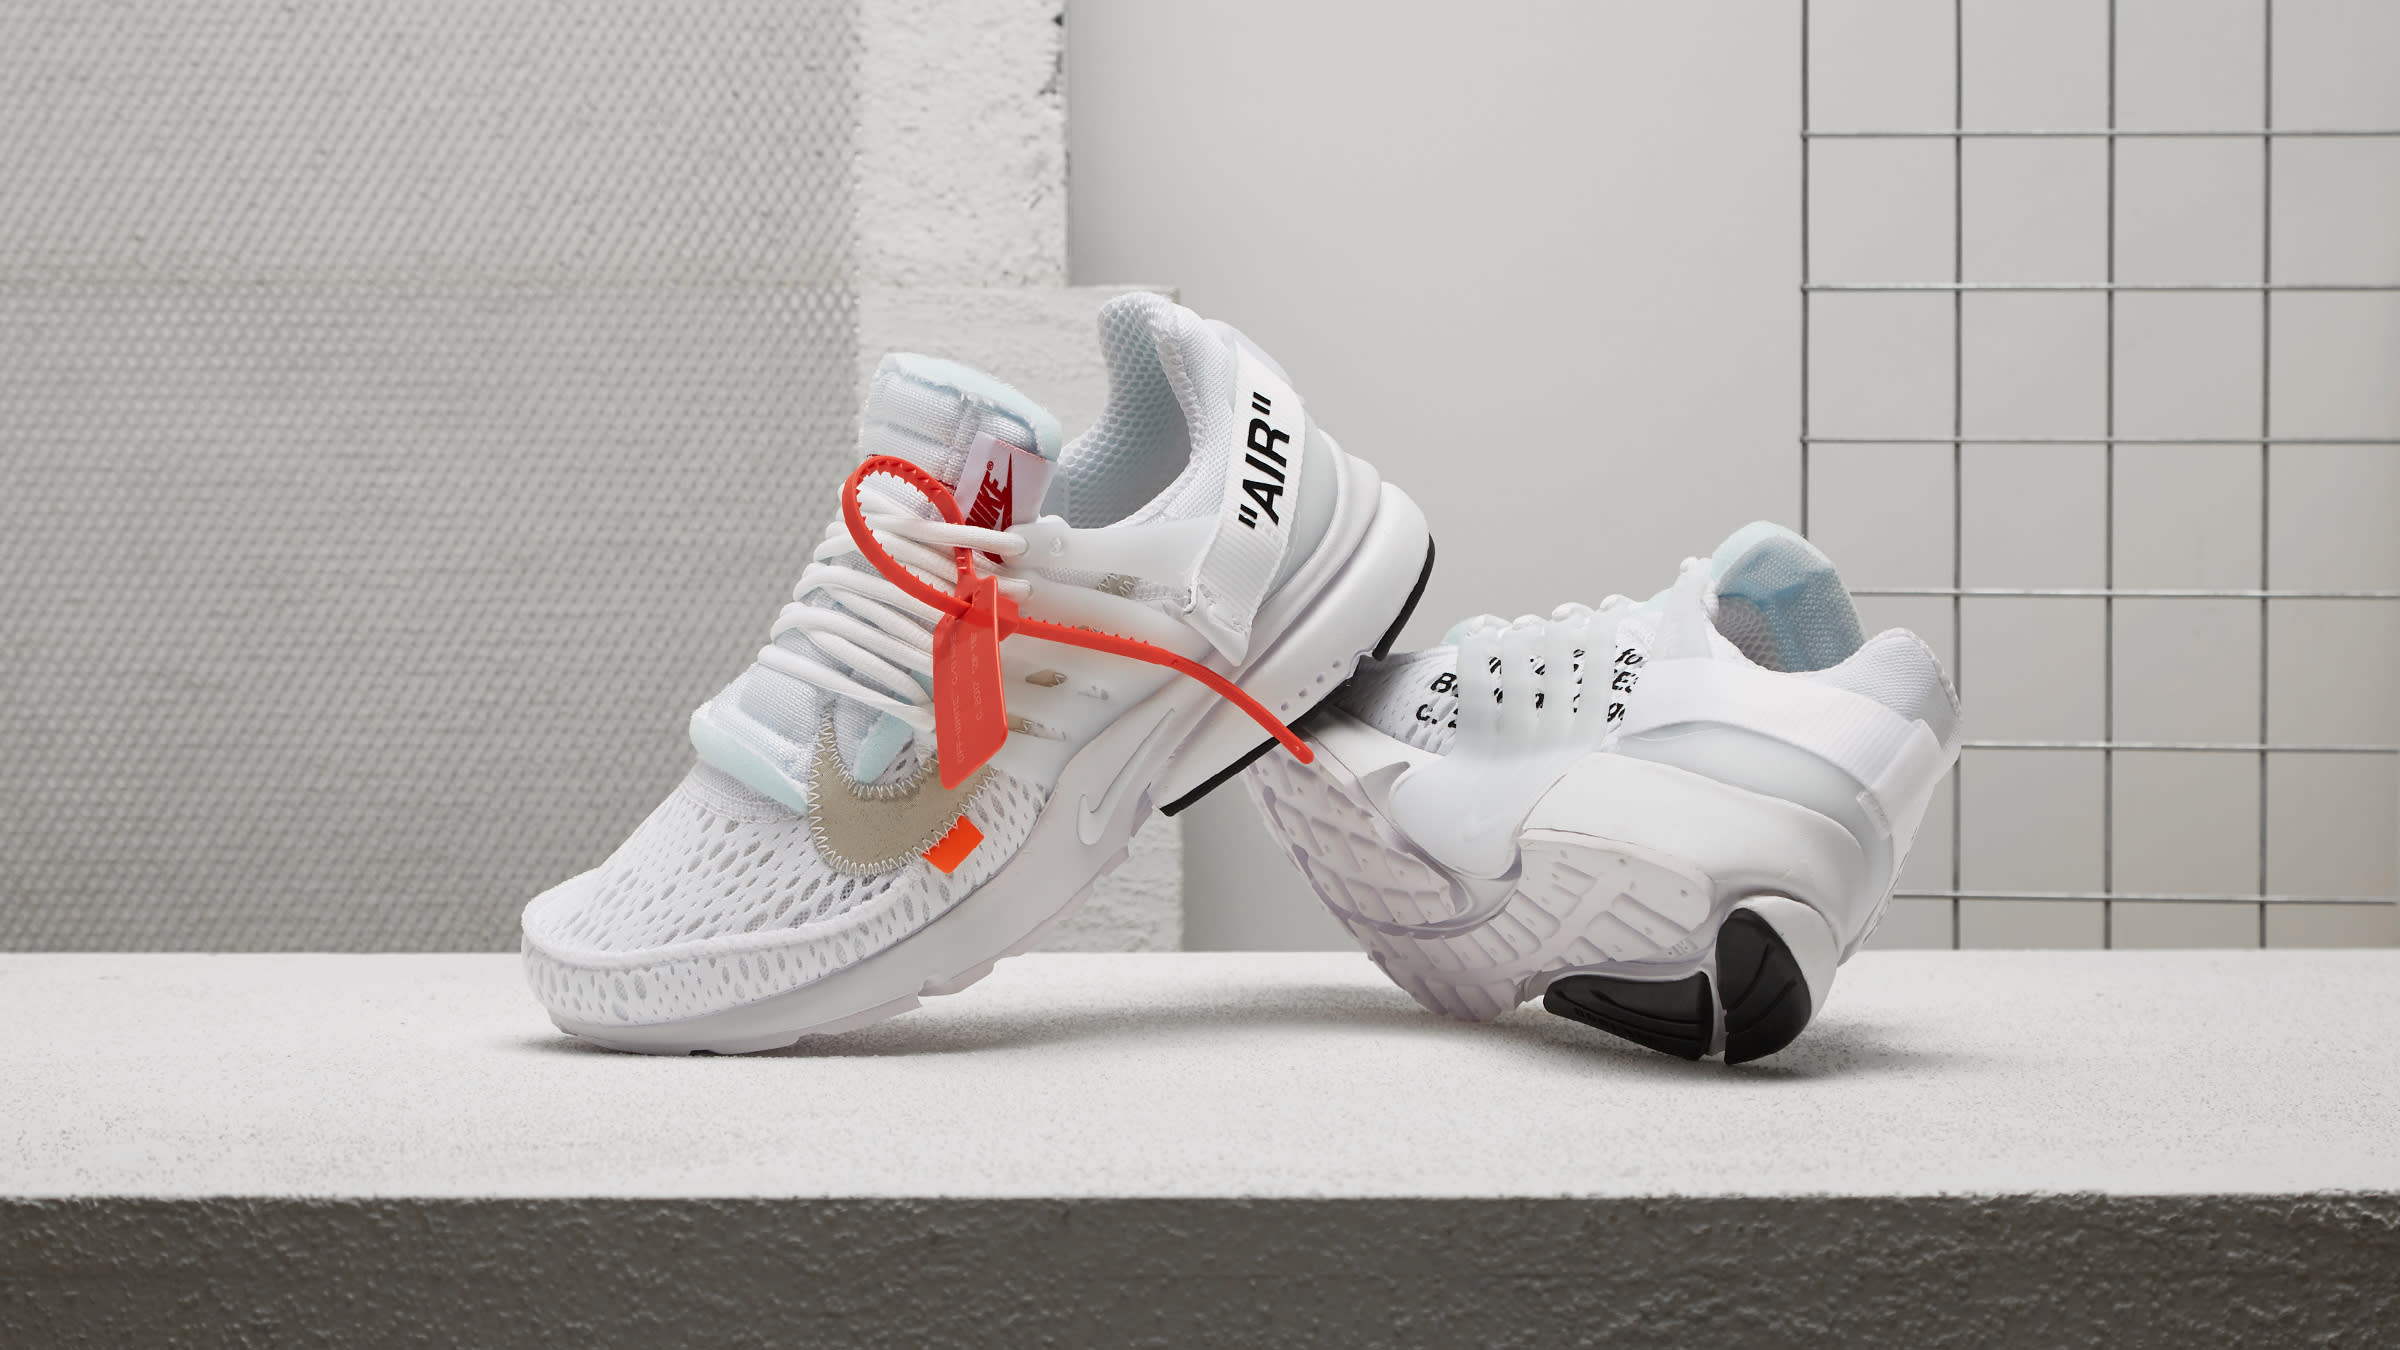 Nike Presto (White & Black Cone) END. Launches